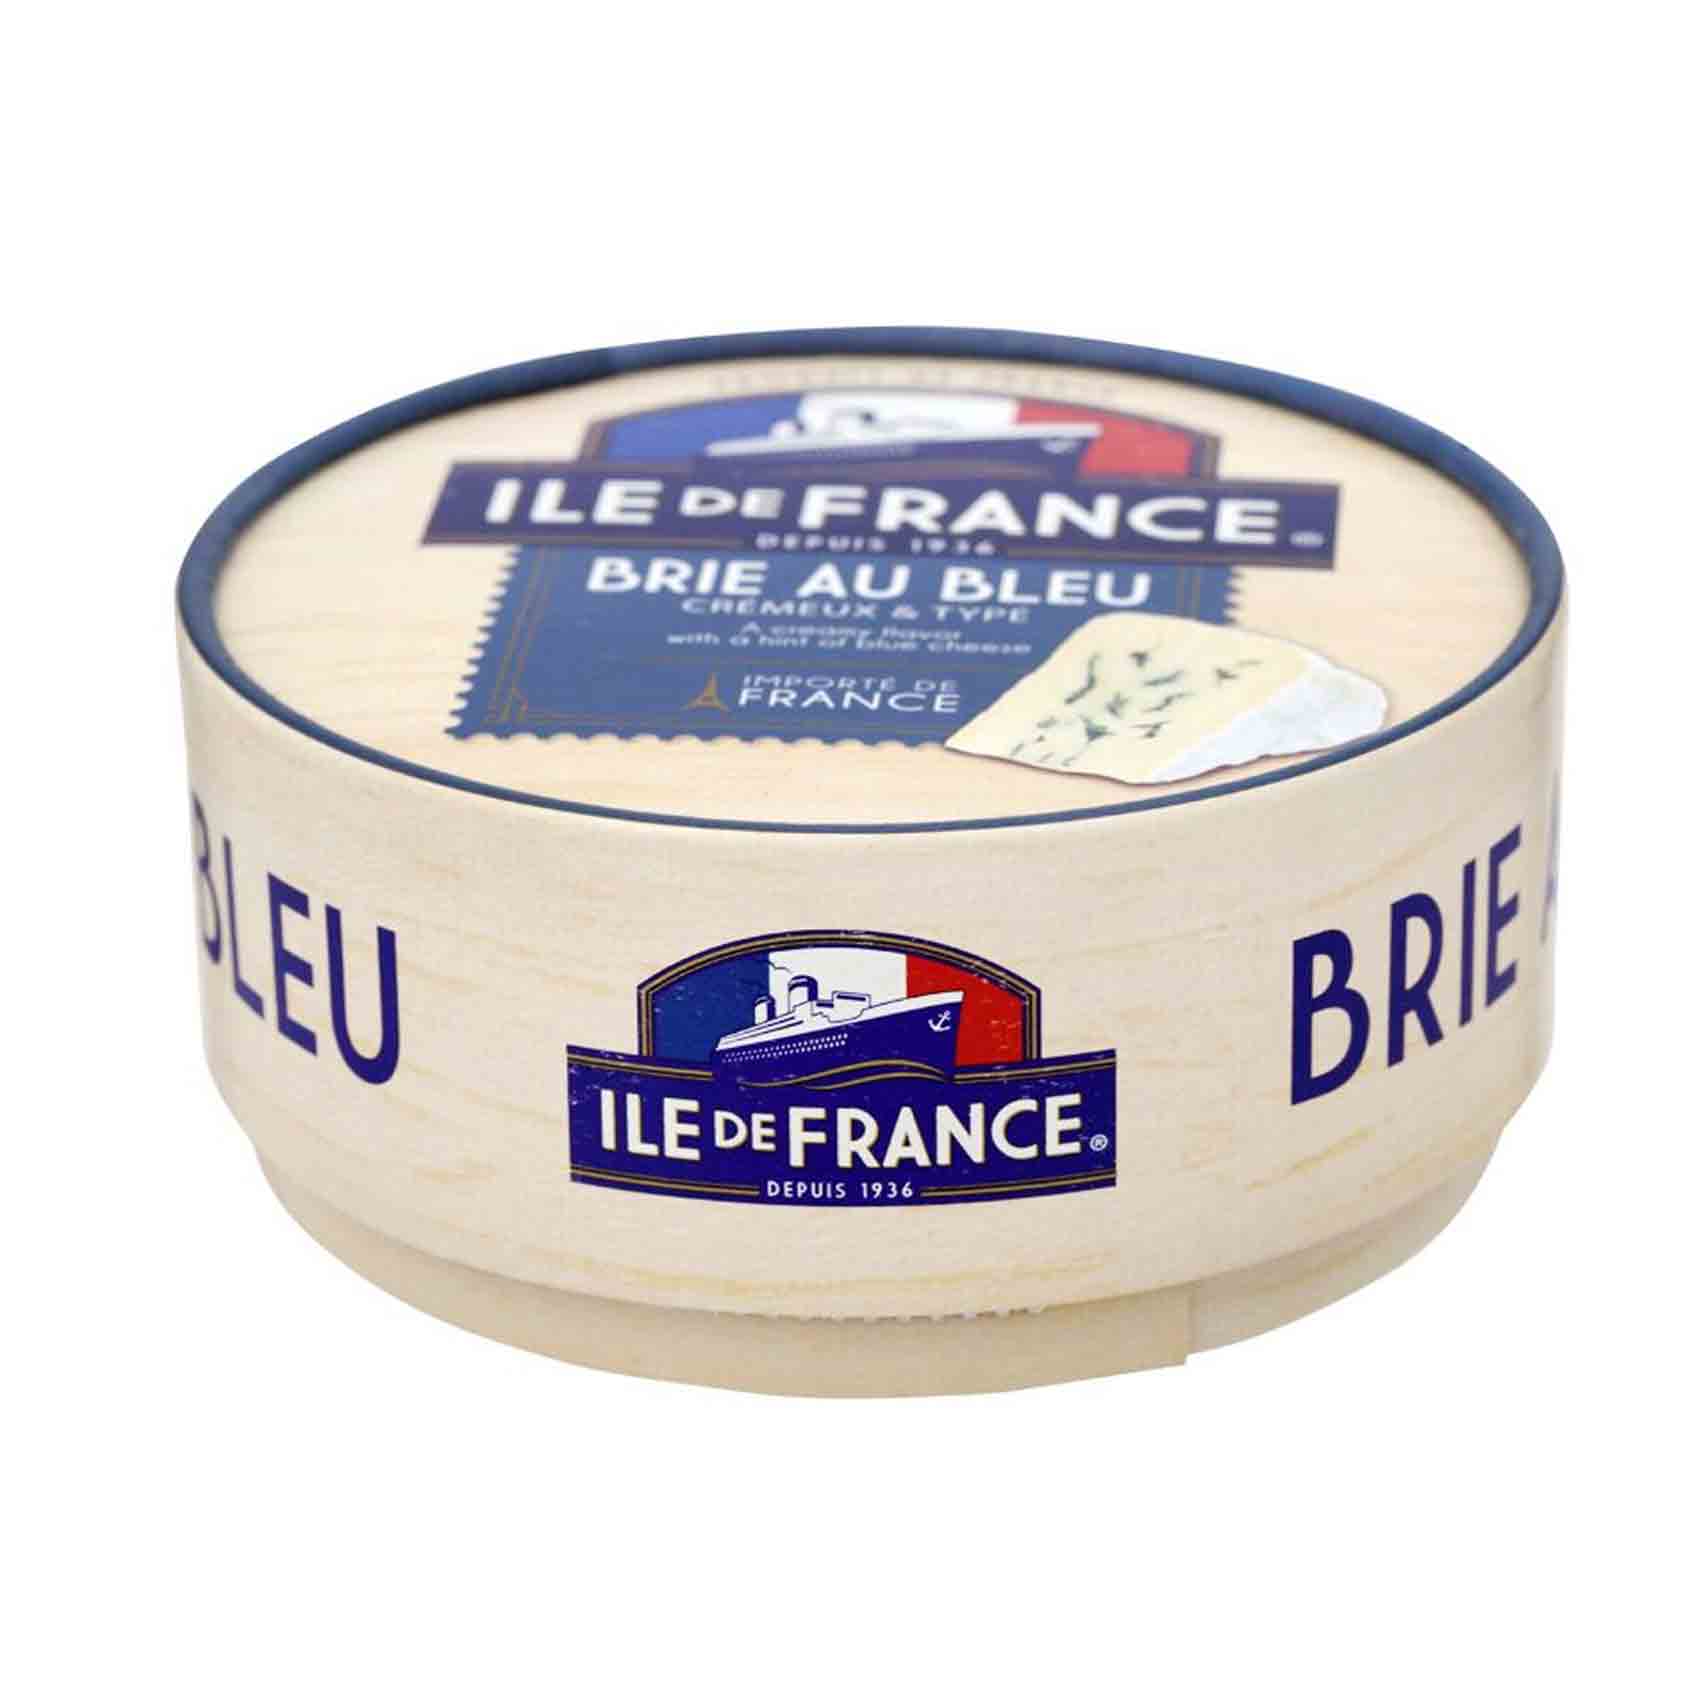 Ile De France Brie Blue 125 Gram